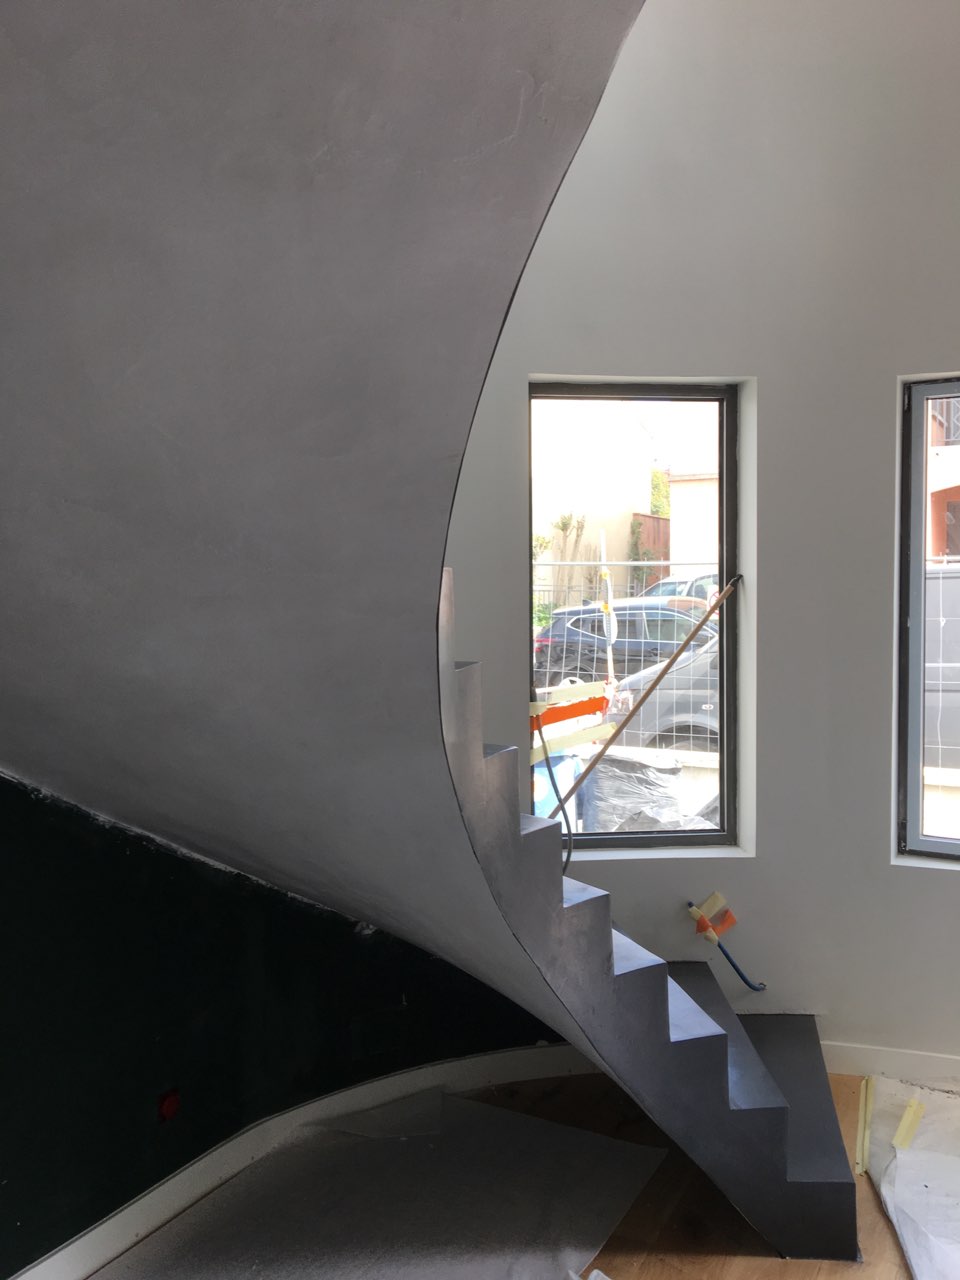 remarquable escalier hélicoïdal esthétique habillé en béton ciré couleur platinium toulouse pour un particulier